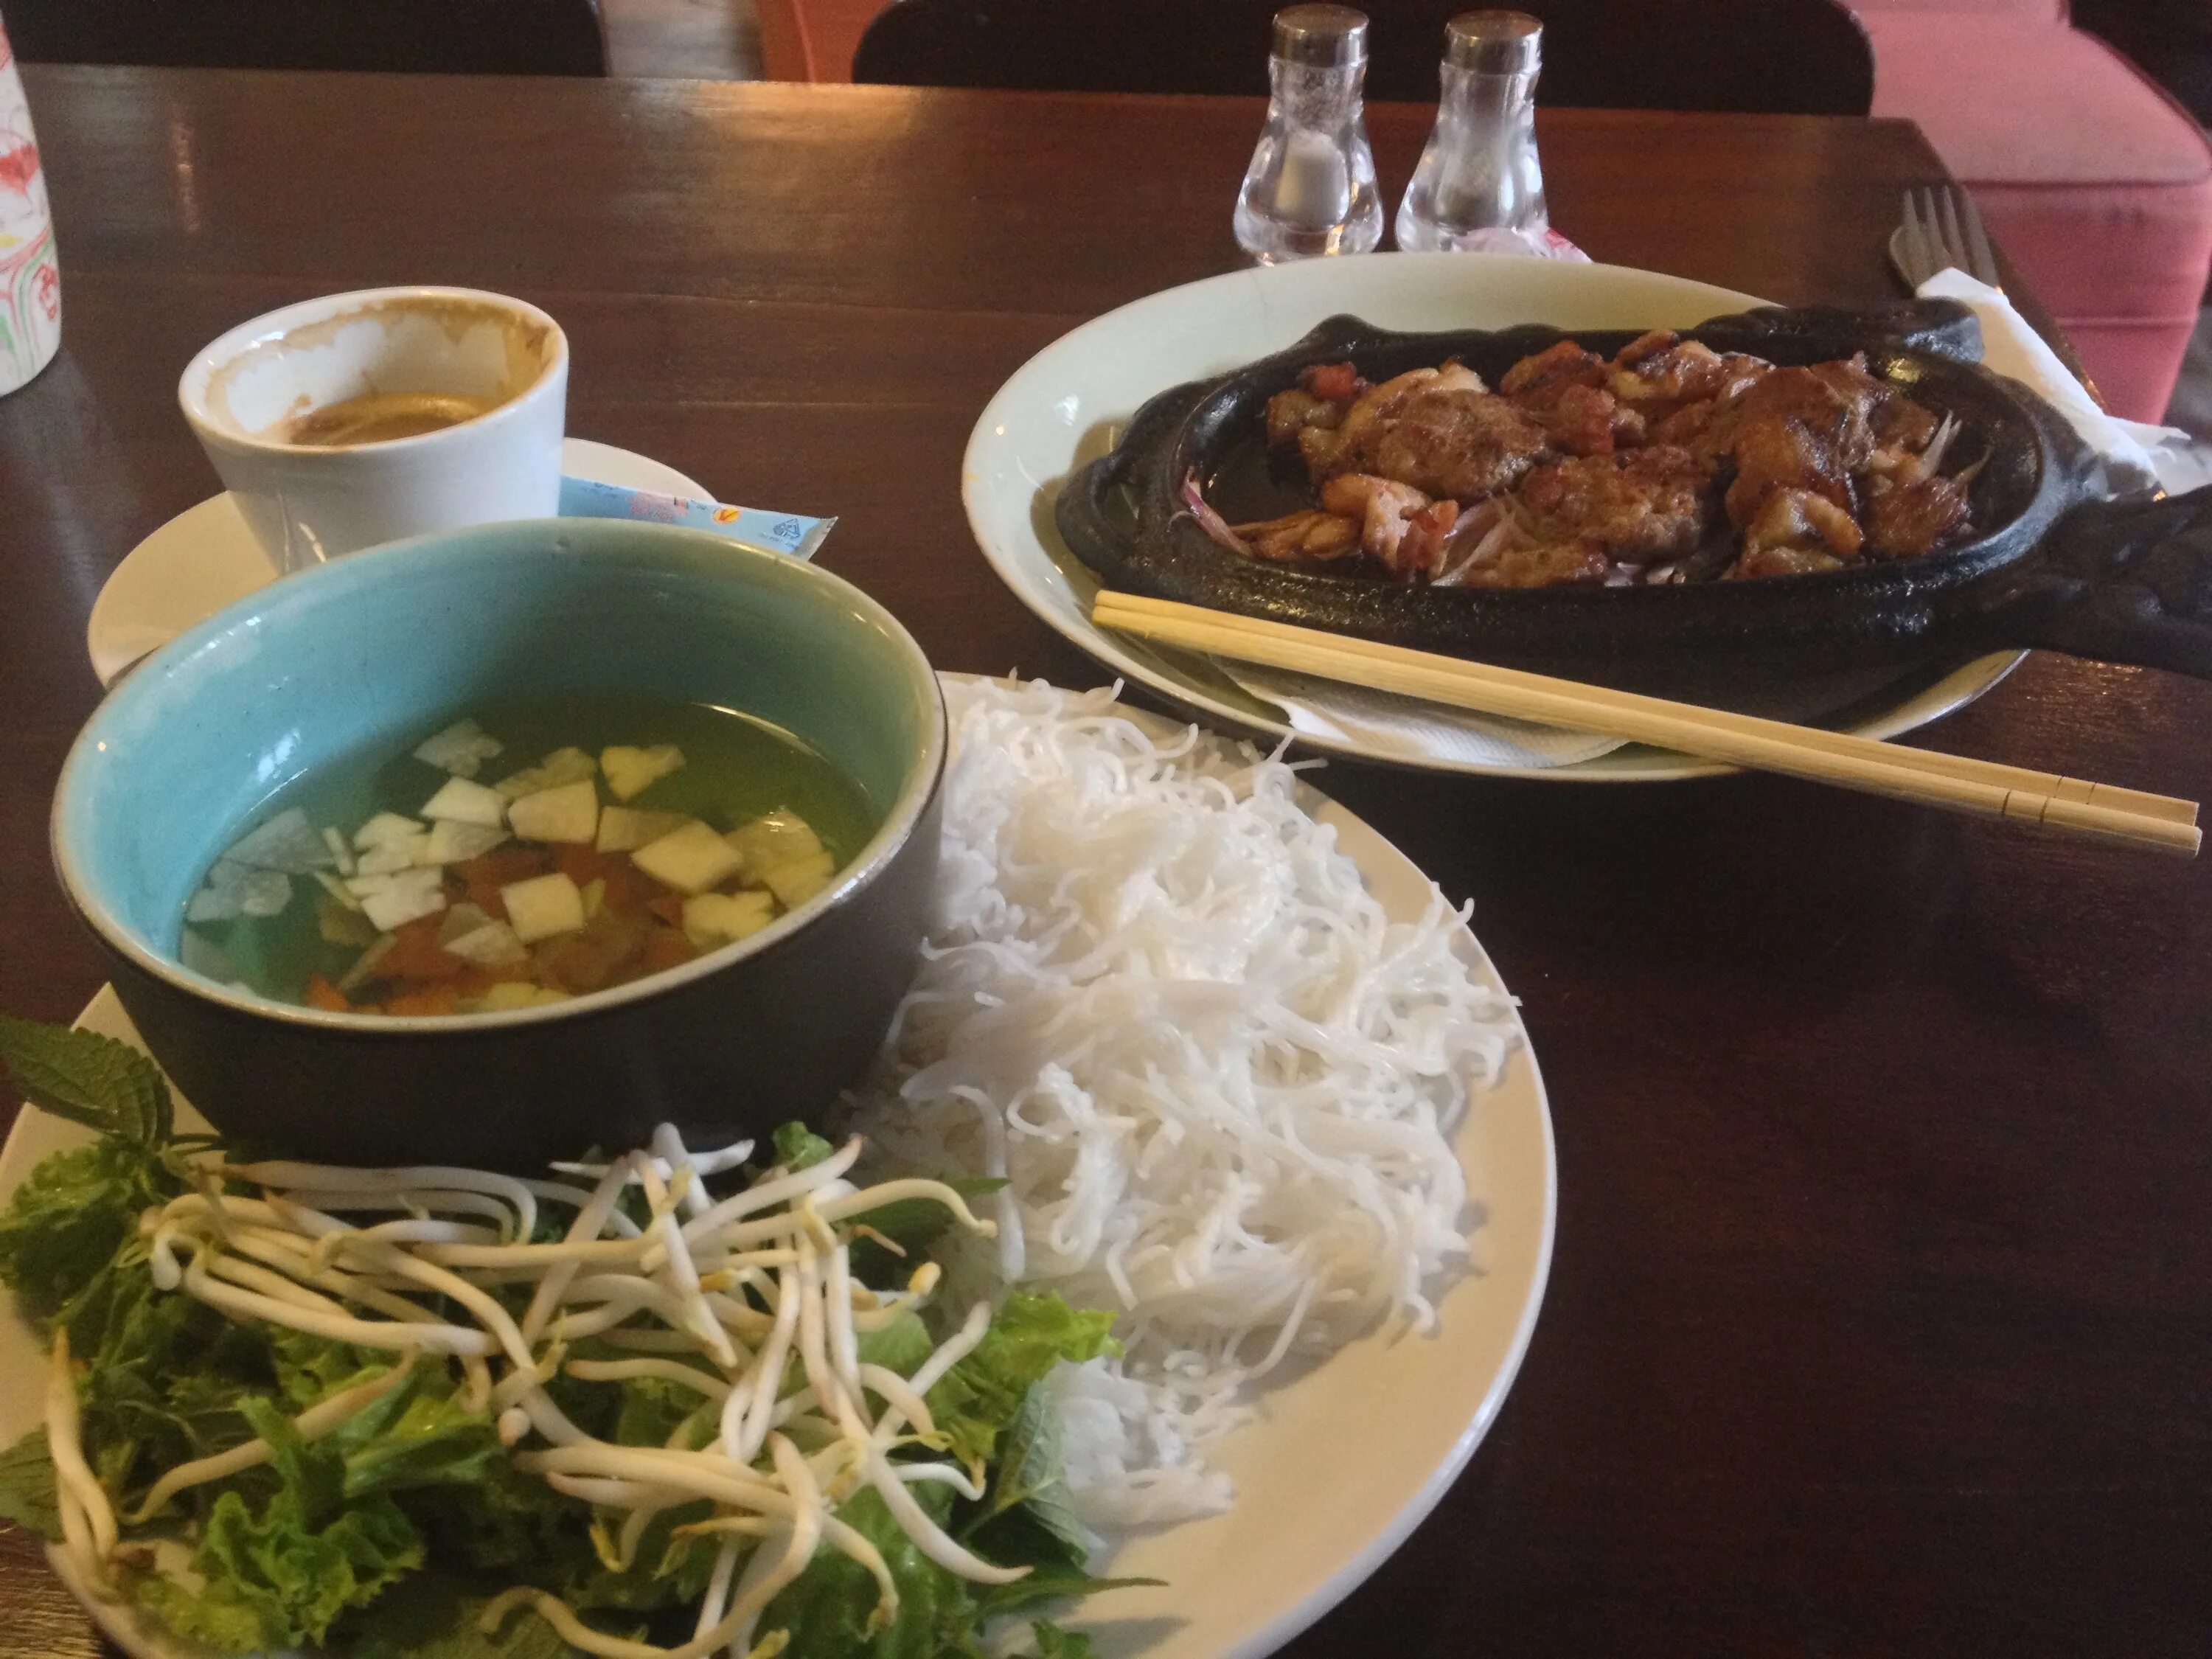 Ханой еда. Гао ресторан вьетнамской кухни. Ресторан вьетнамской кухни Ханой. Ужин в китайском ресторане. Вьетнамские рестораны в Ханое.